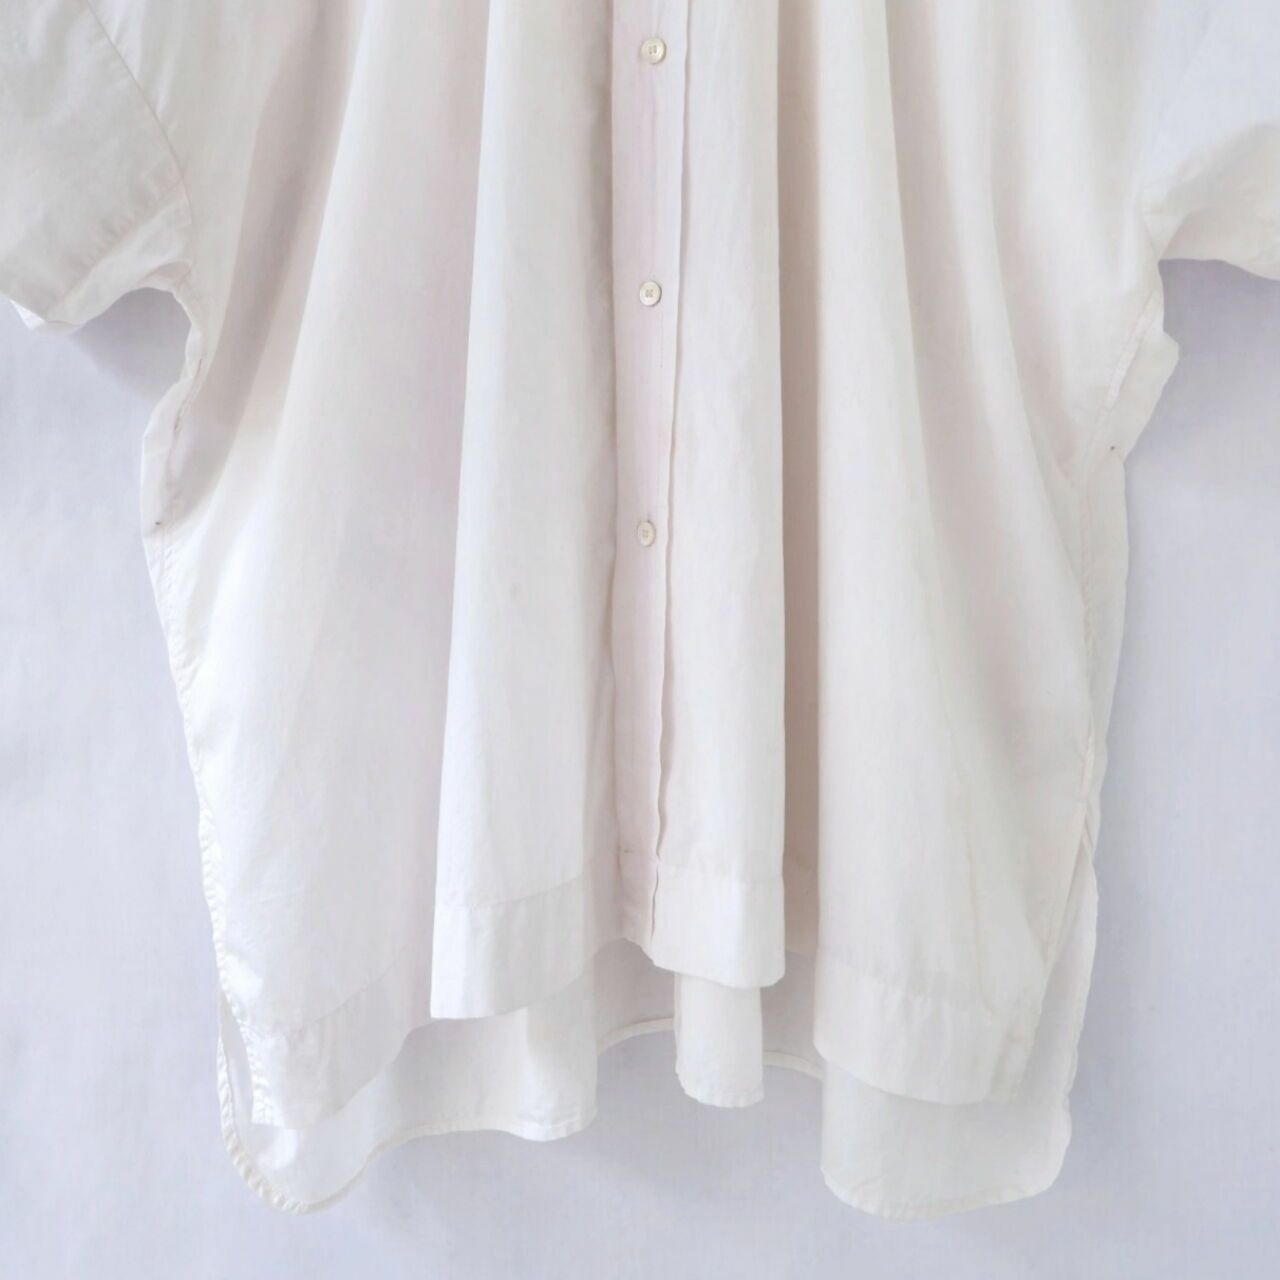 Yohji Yamamoto White Plaid Dress